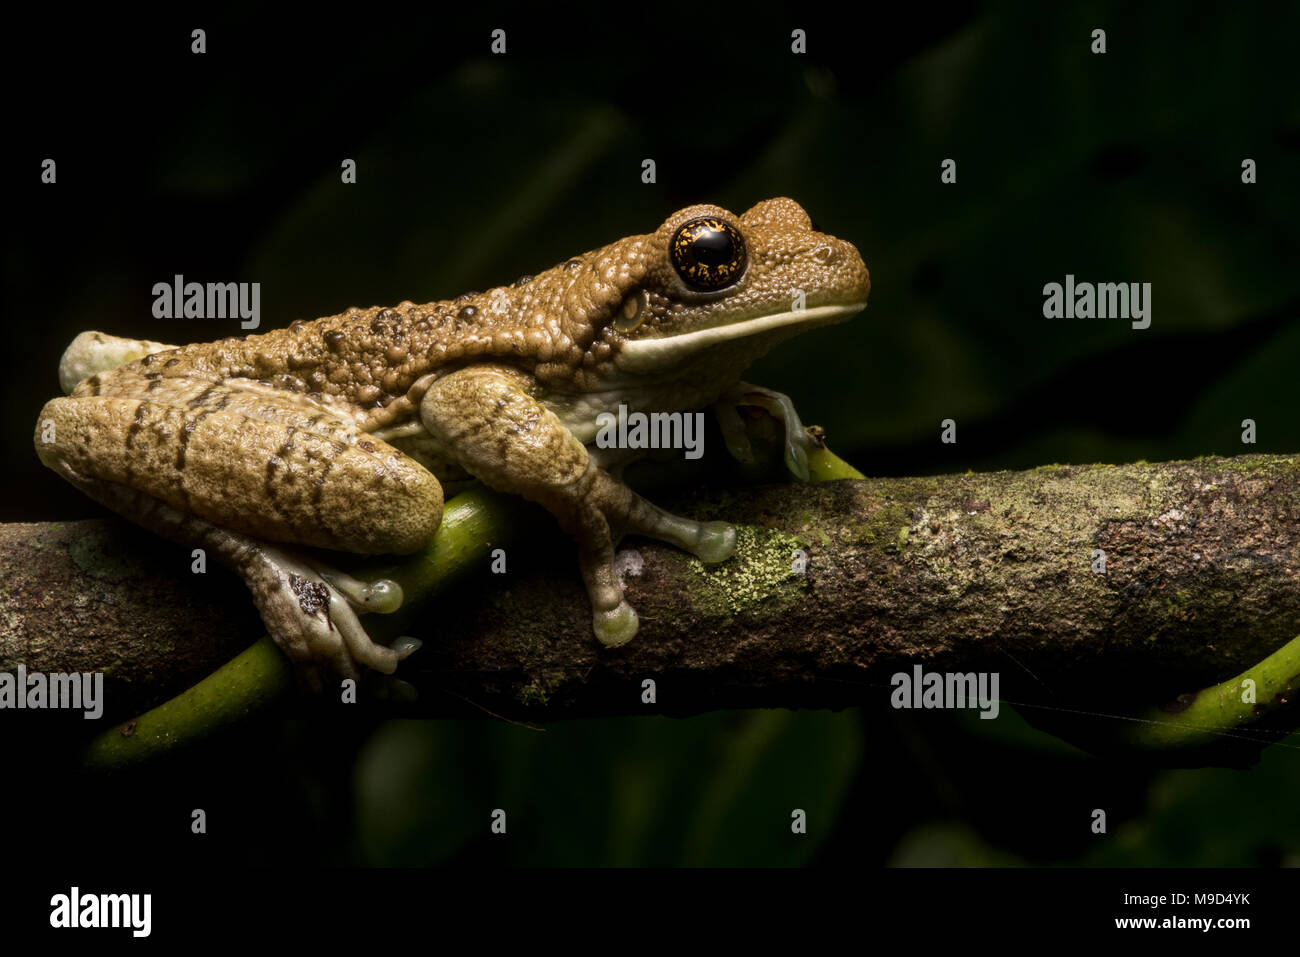 Eine geäderte Laubfrosch (Trachycephalus venulosus) aus Peru. Diese frog haben giftige Sekrete, die it von Raubtieren zu verteidigen. Stockfoto